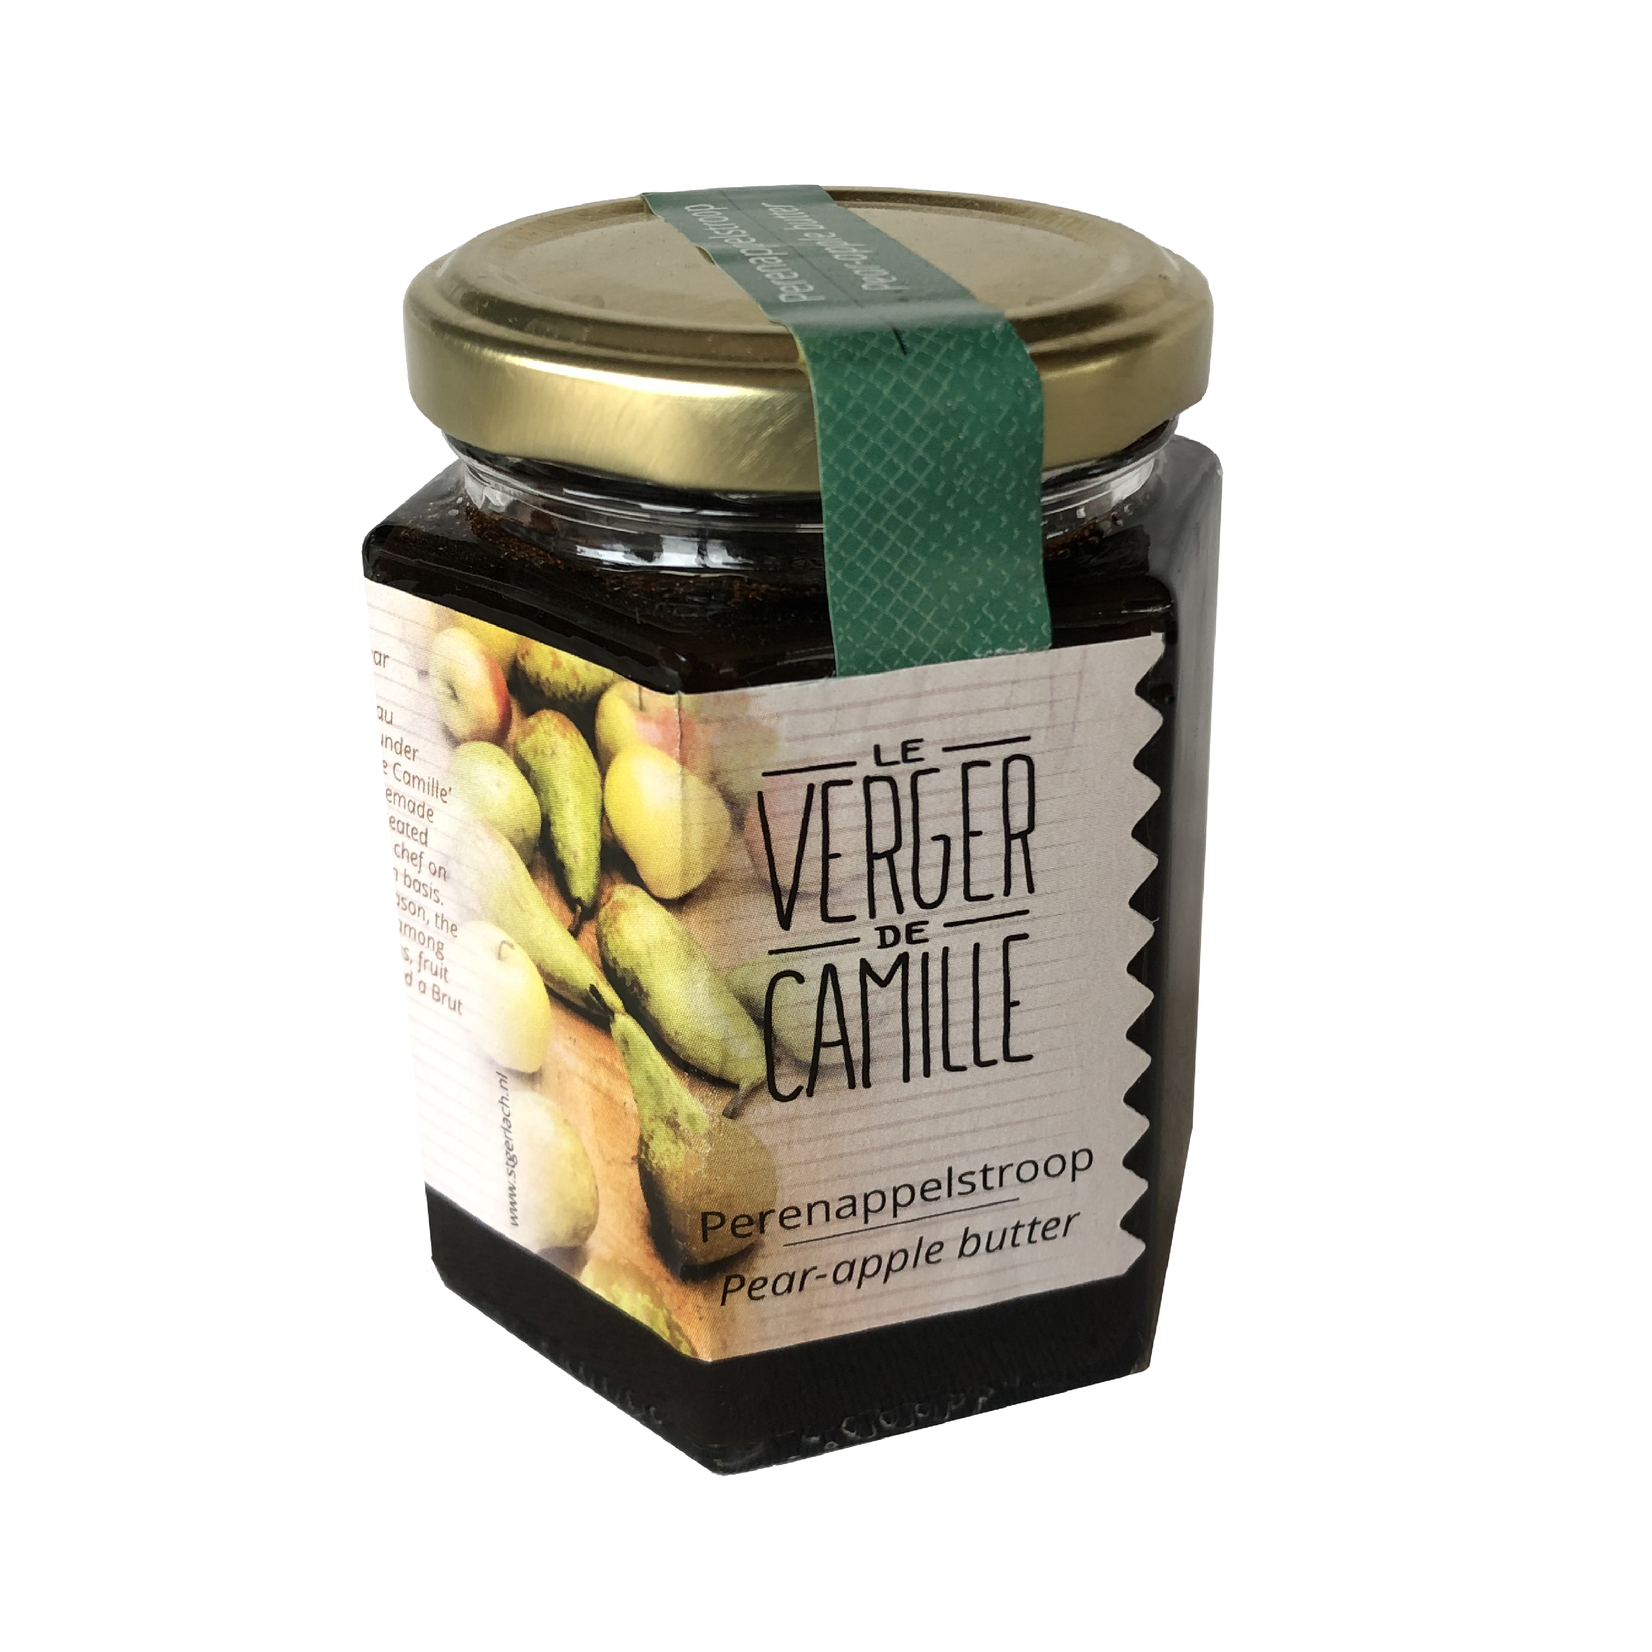 Le Verger de Camille Pear-apple butter